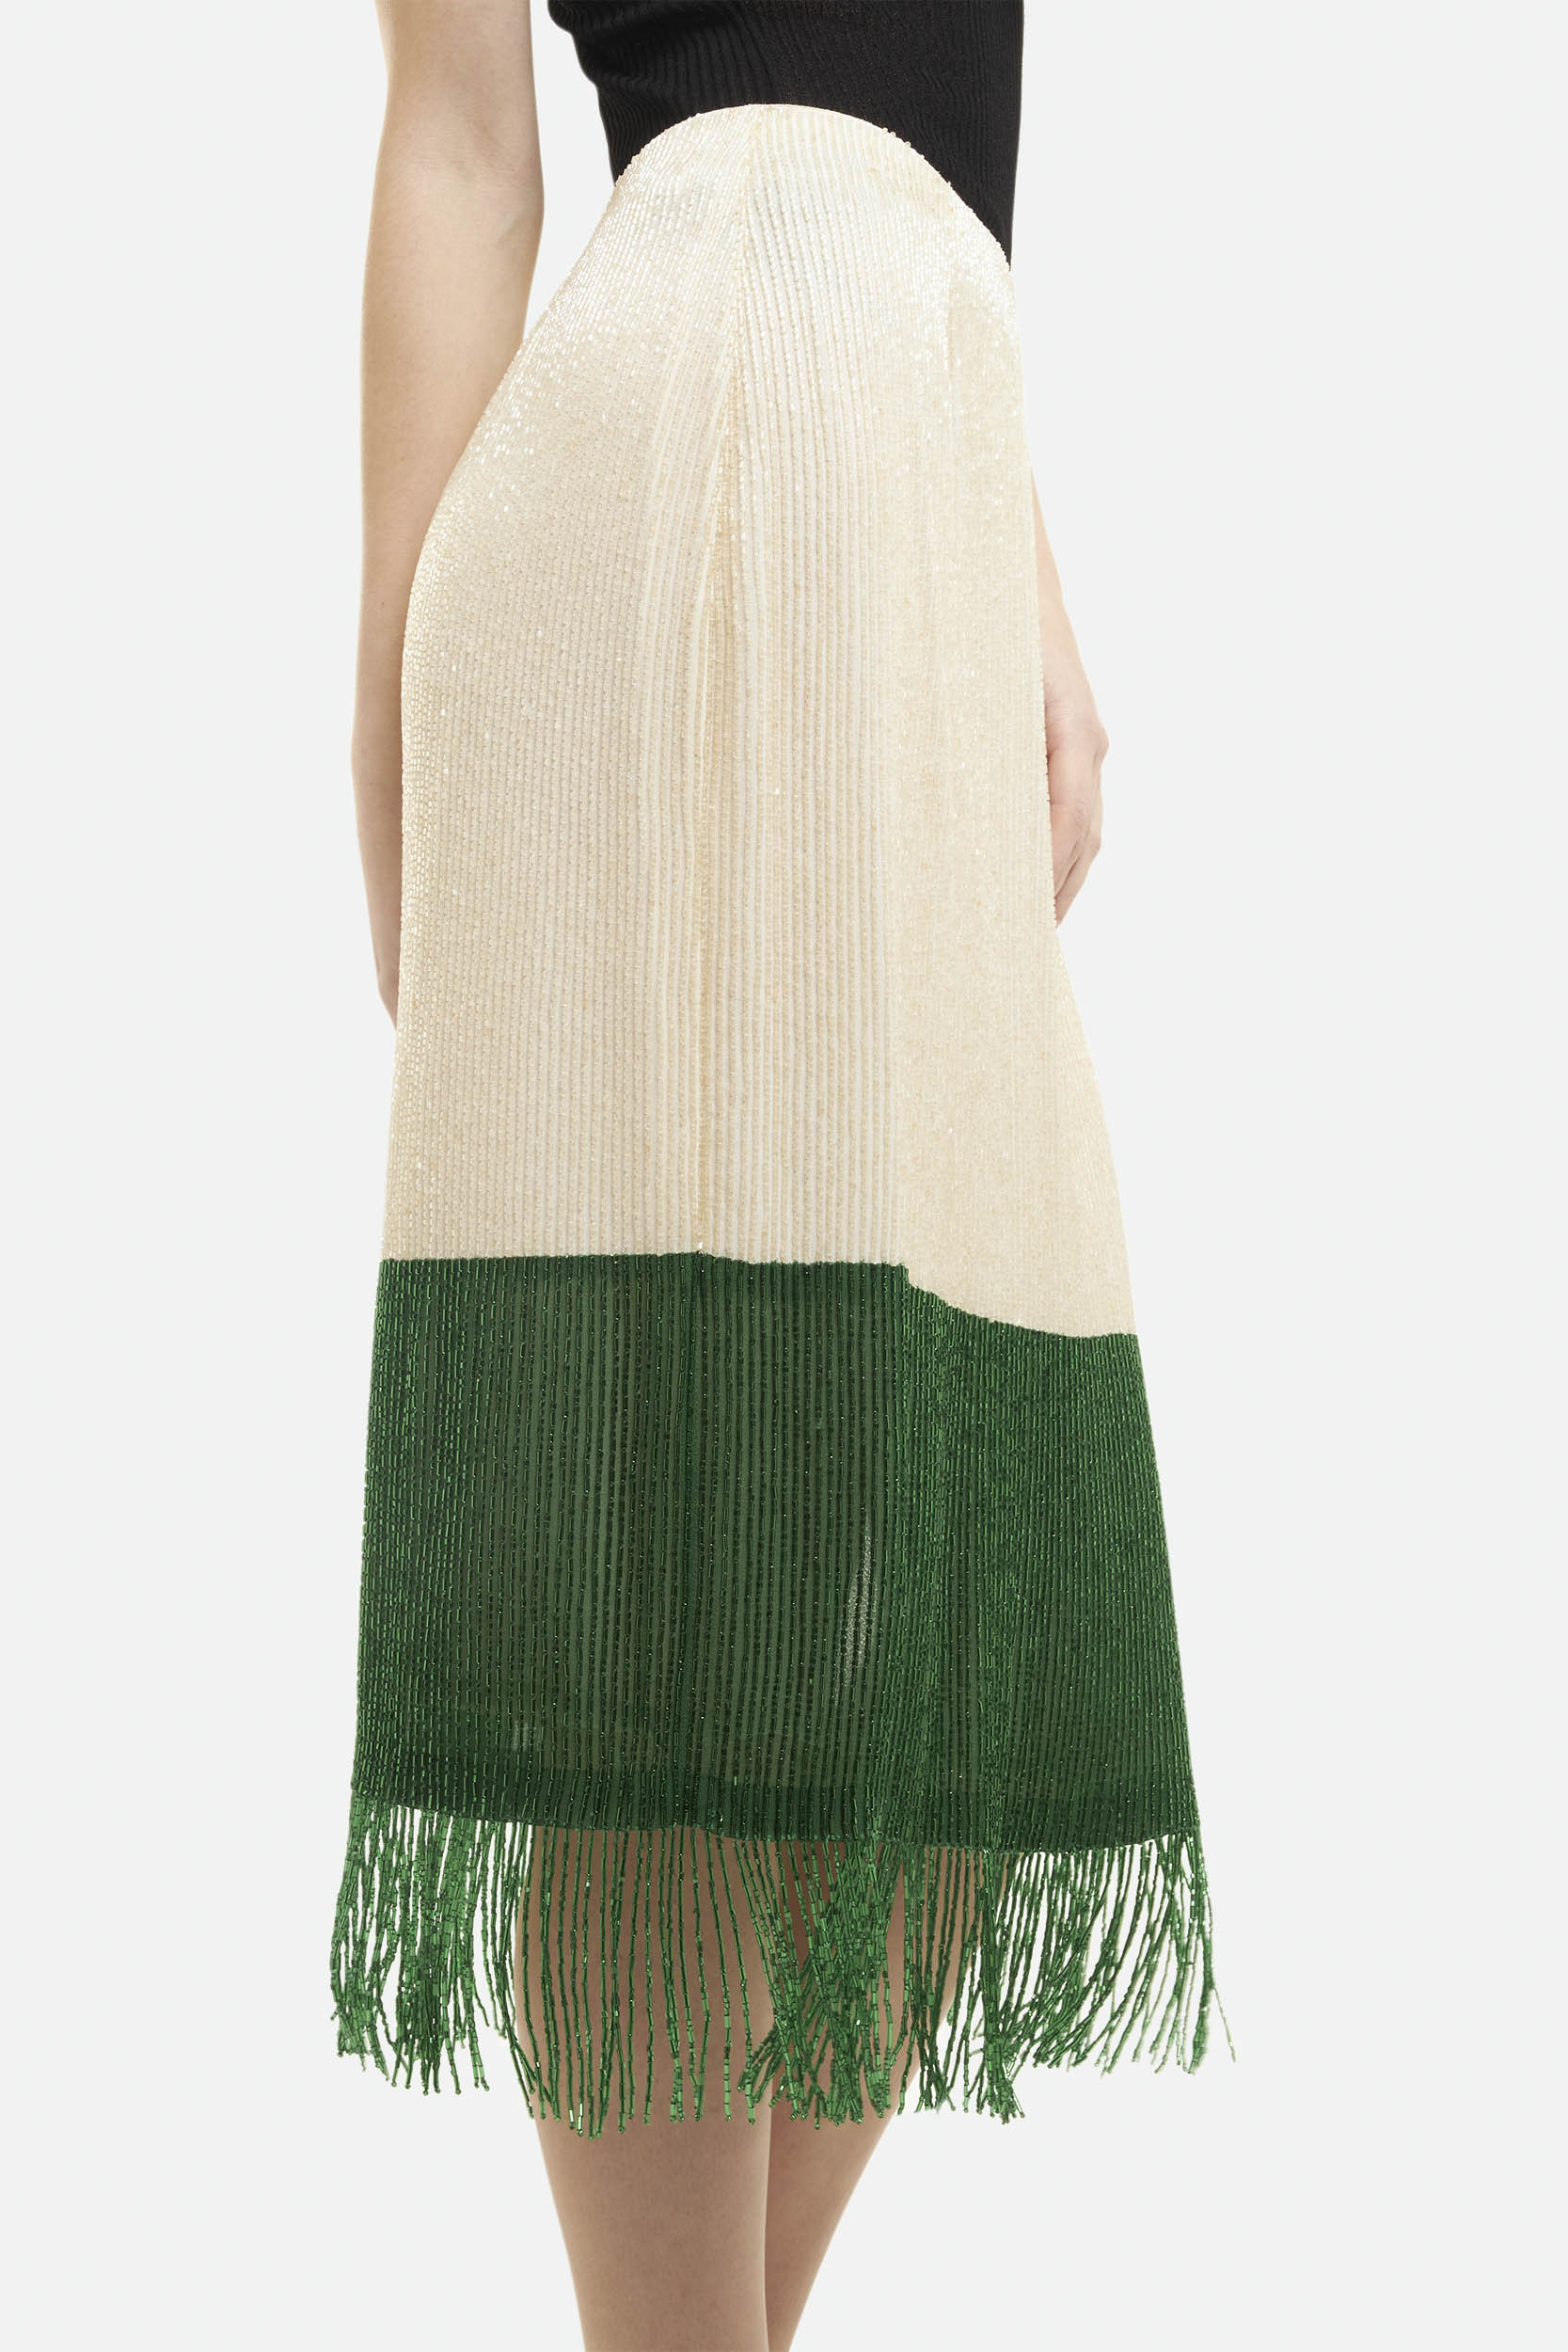 Elisabetta Franchi White and Green Midi Skirt